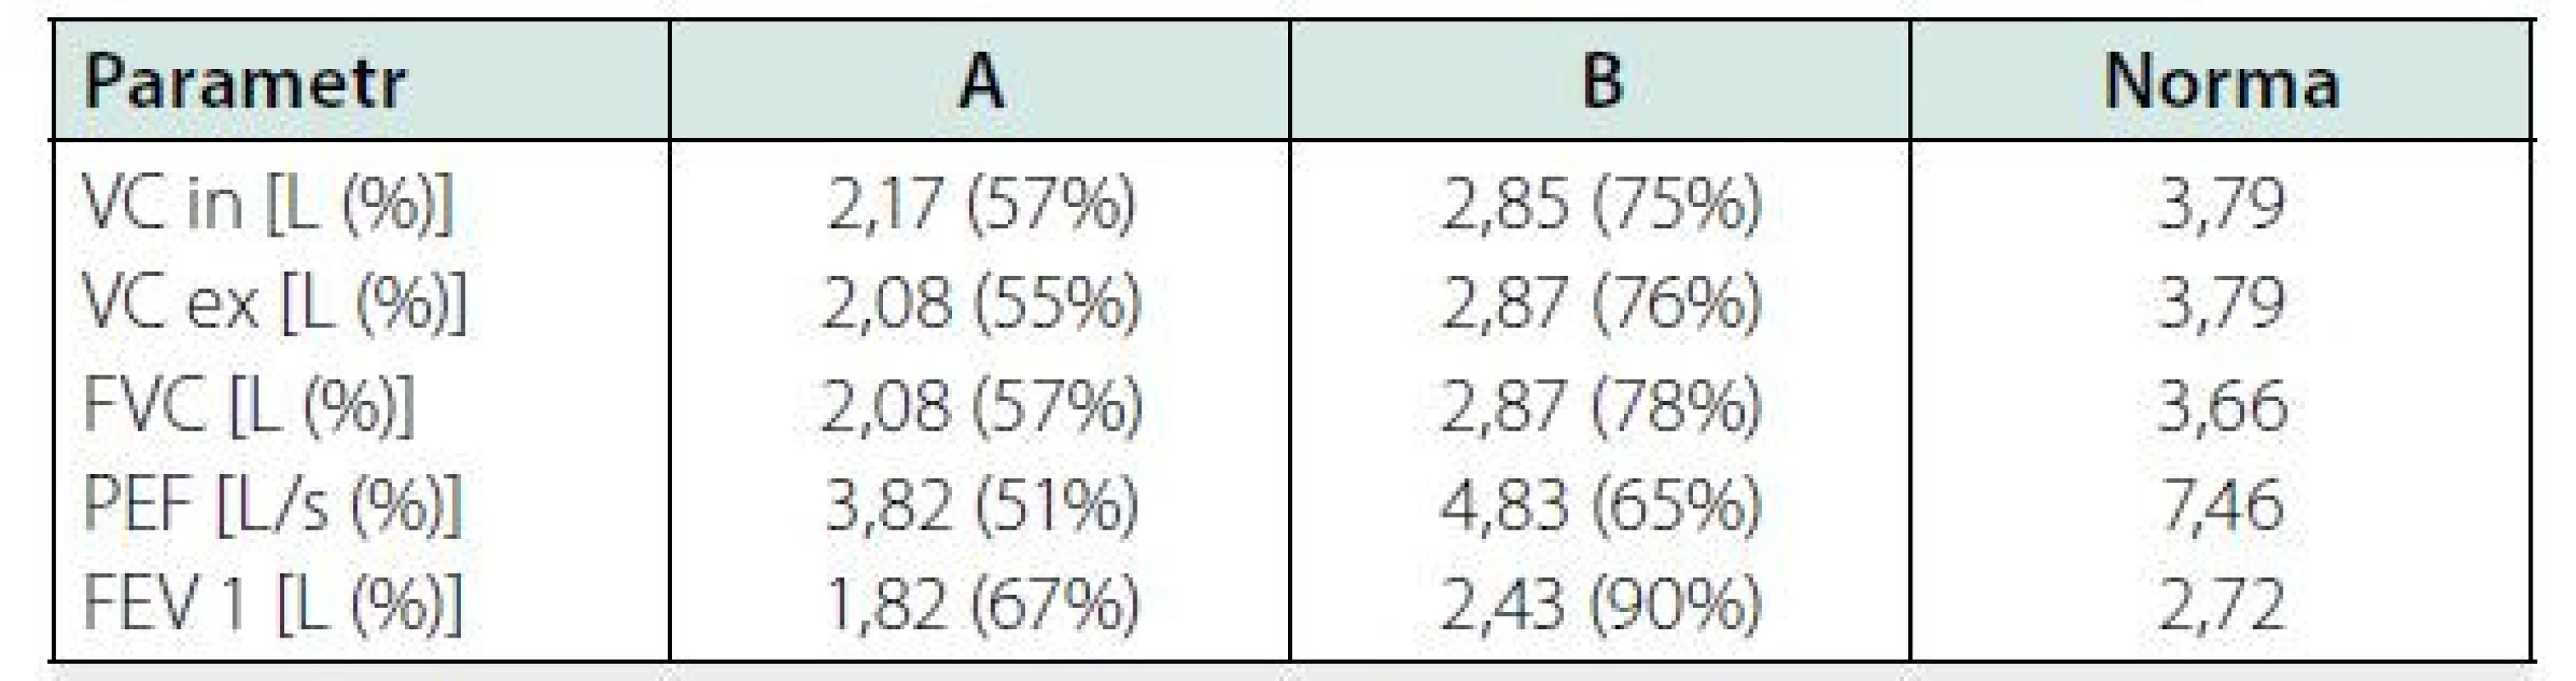 Srovnání vybraných parametrů spirometrie při terapii amiodaronem
(sloupec A) a 3 měsíce po jeho vysazení se současnou terapií kortikoidy
(sloupec B)